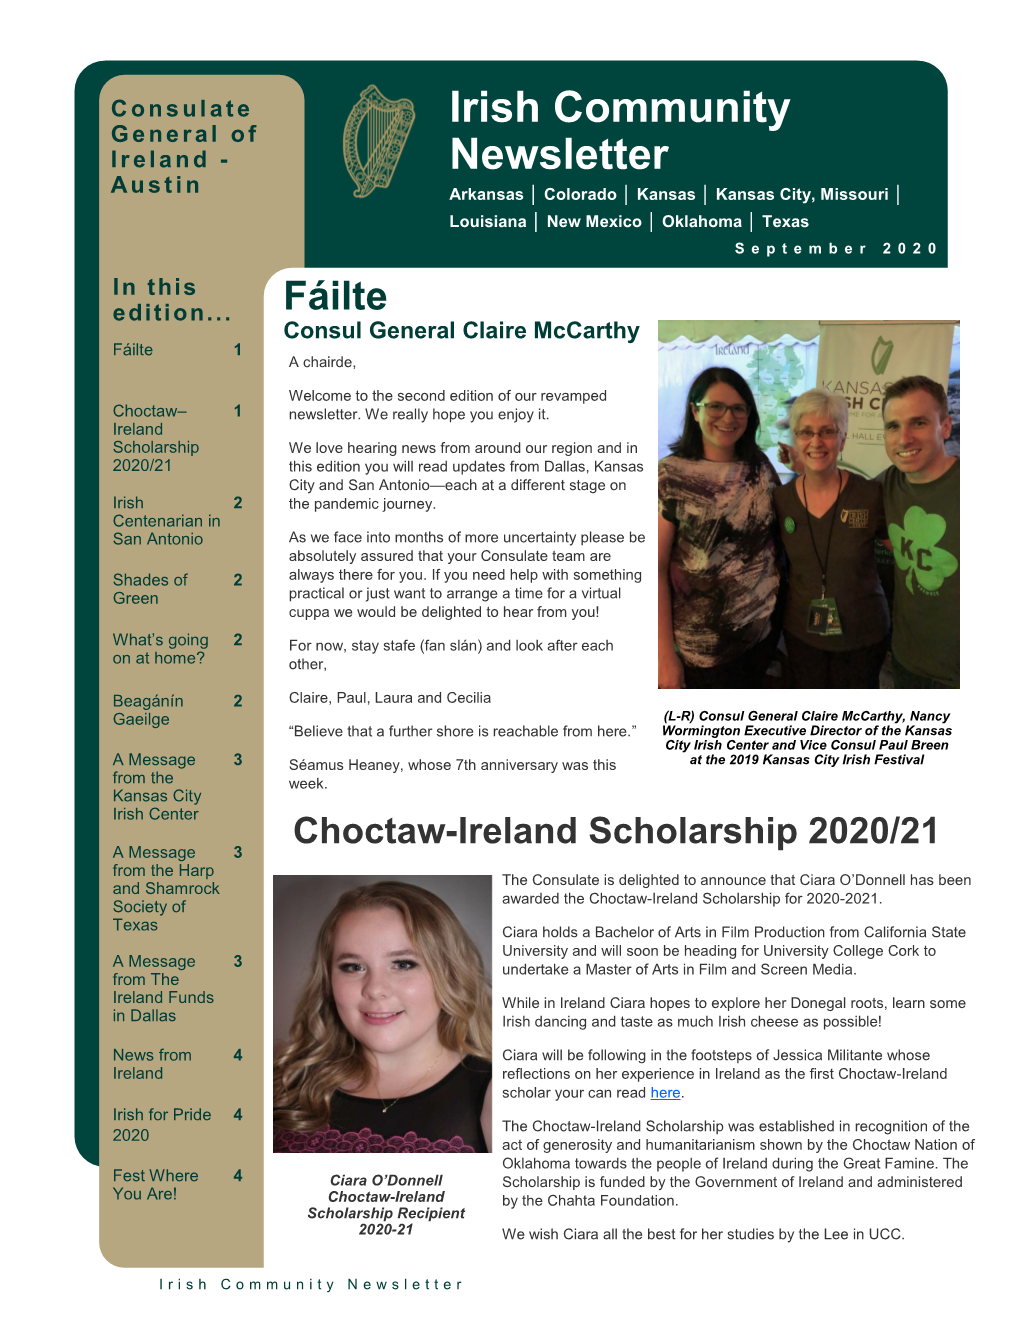 Irish Community Newsletter – September 2020